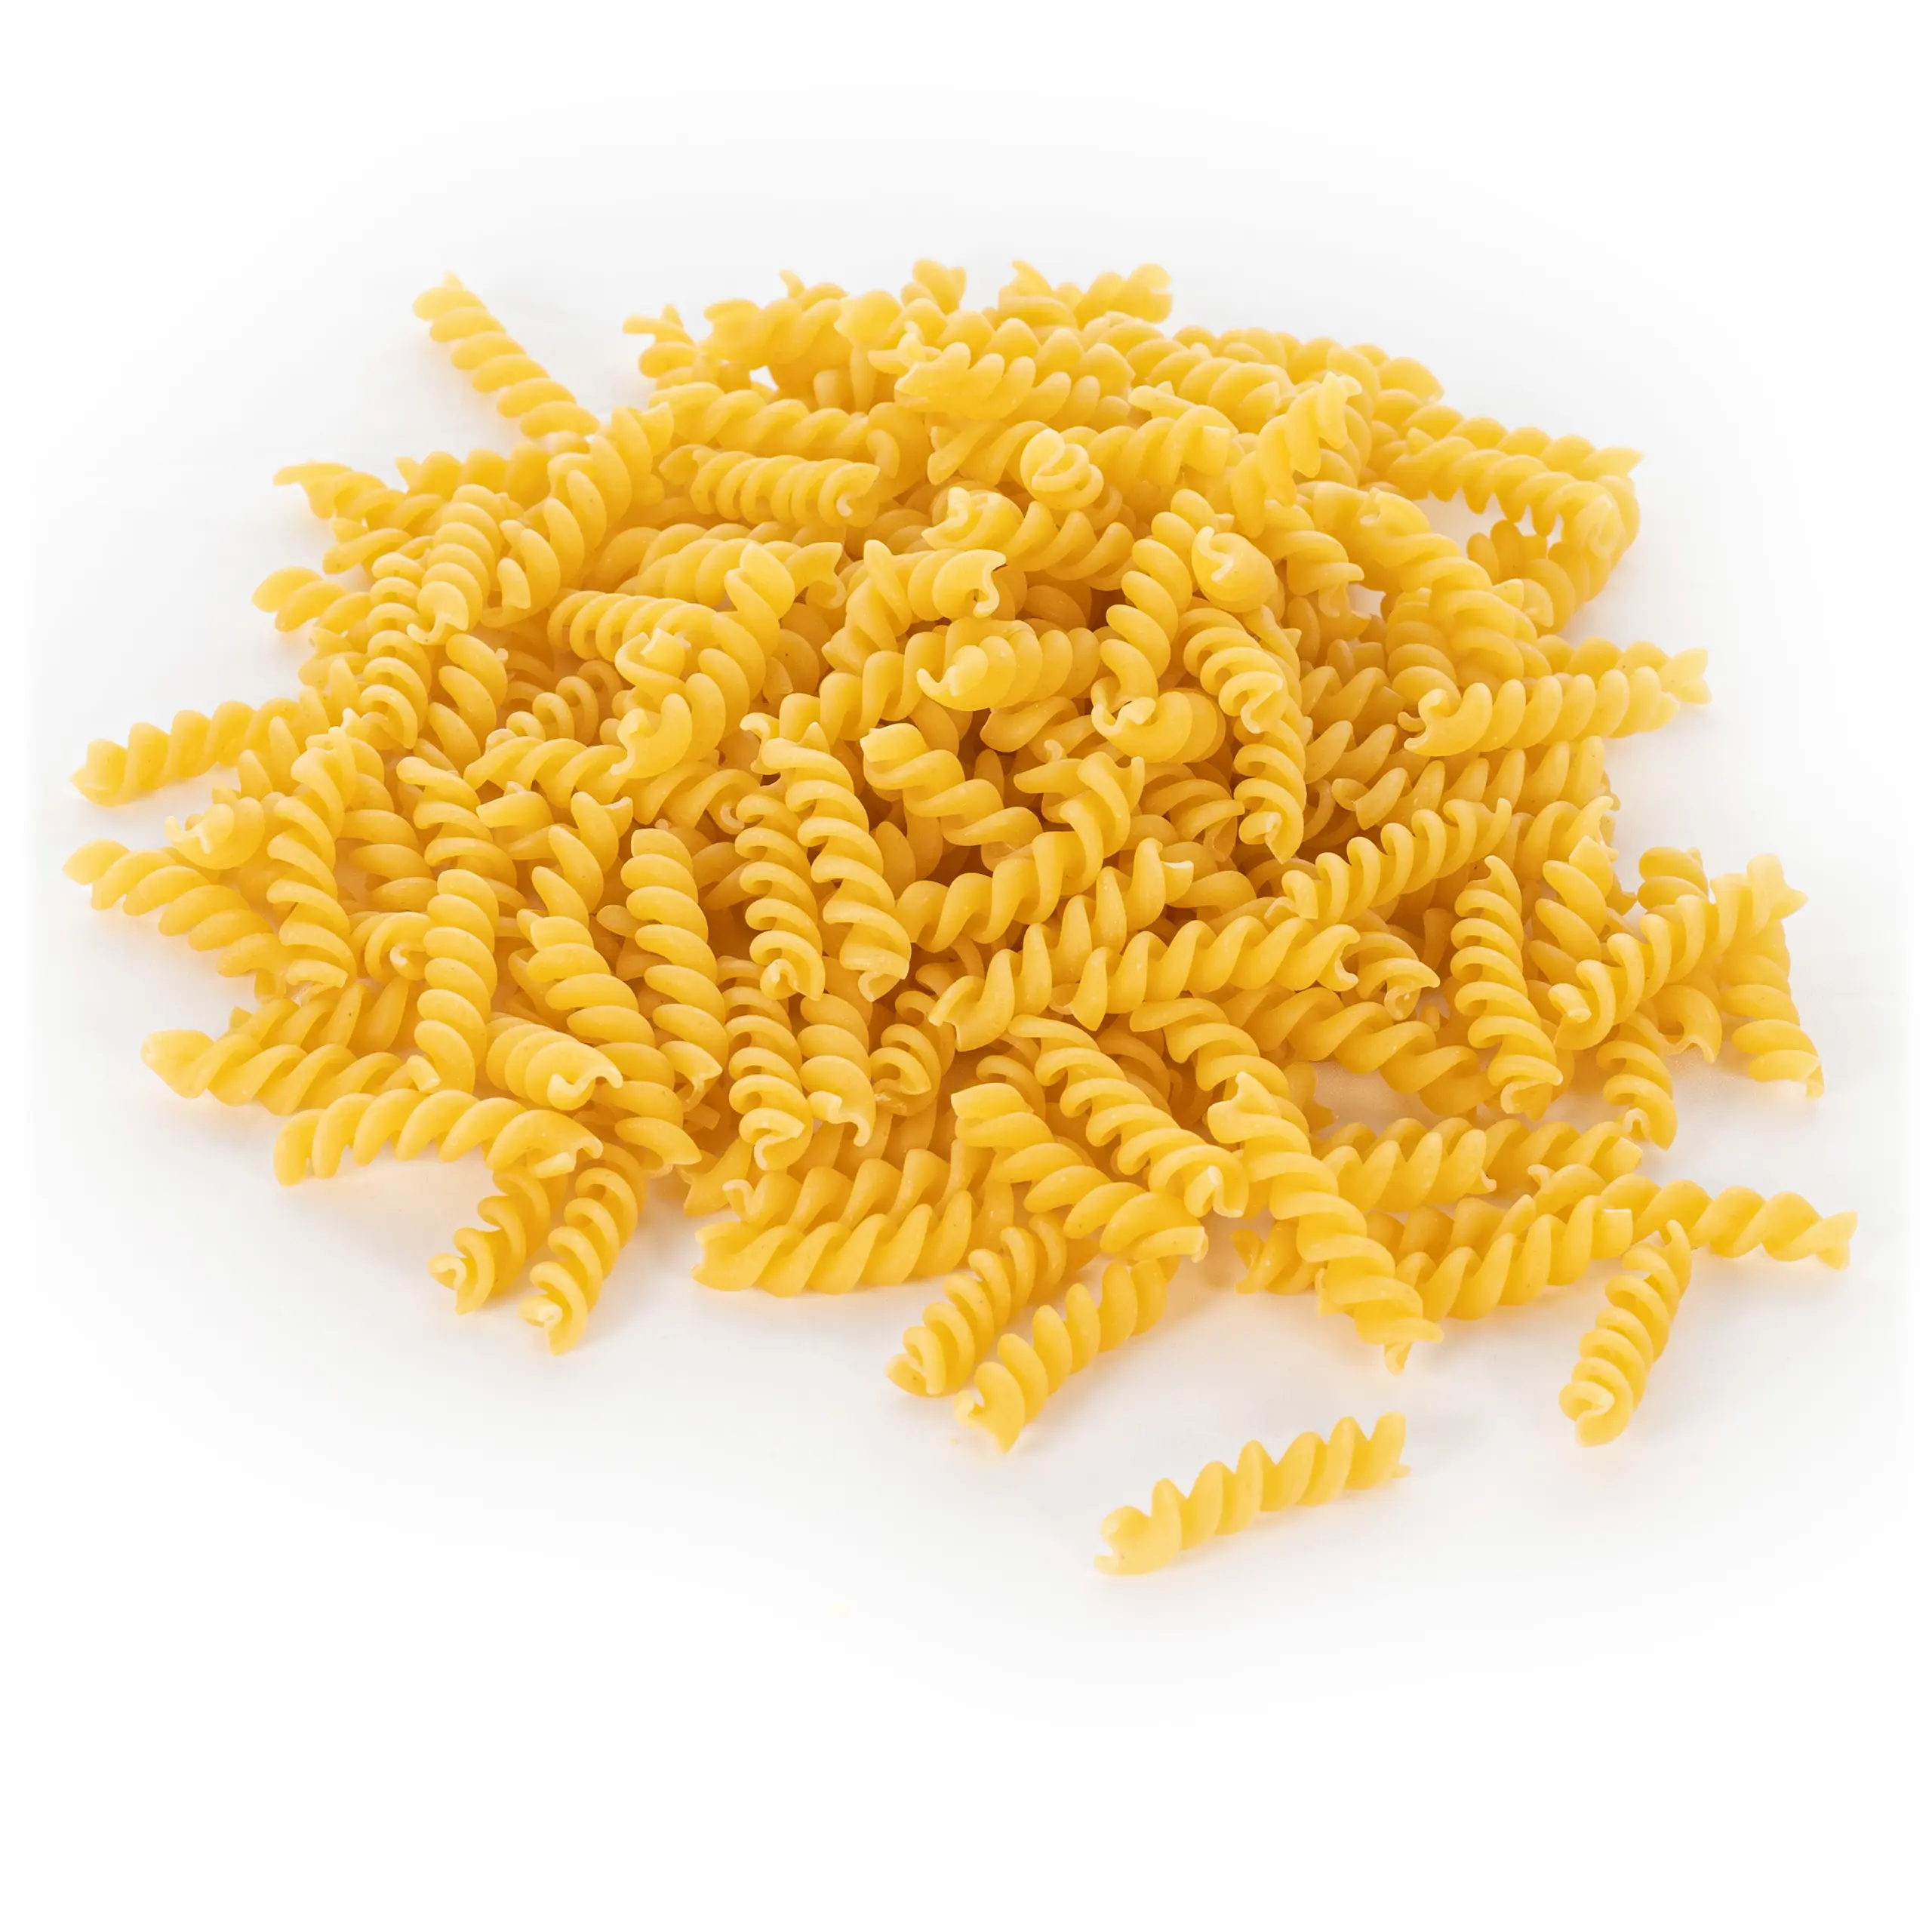 Fusilli macaroni tradicional italiano, bom preço, macaroni fusilli seco, macaroni com textura dura e resistente, macaroni fusilli